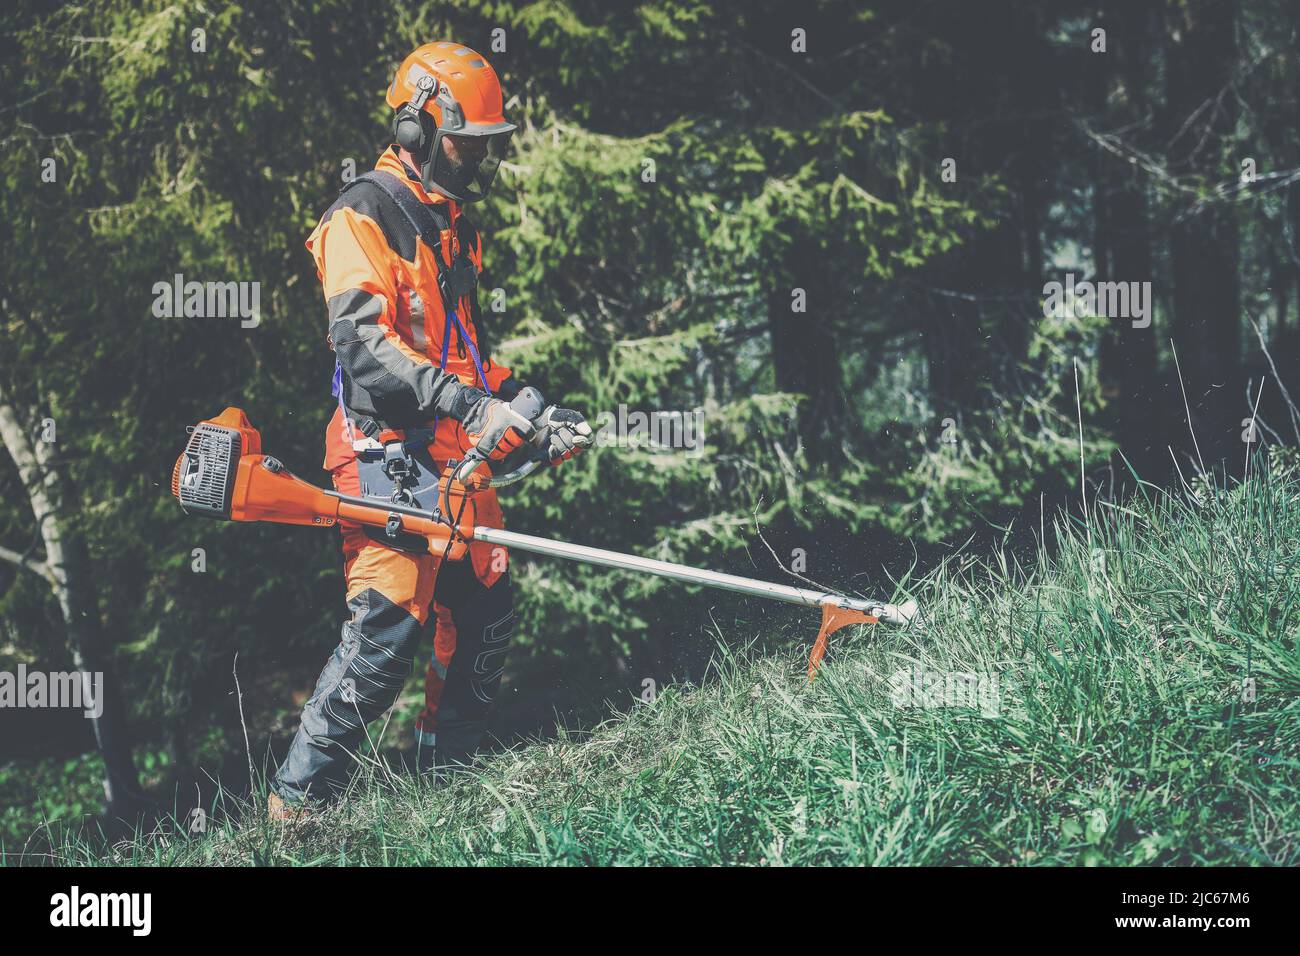 Ein Mann mit einer Motorsense schneidet Gras und bürstet. Der Holzfäller  trägt bei der Arbeit eine orangefarbene persönliche Schutzausrüstung.  Gärtner, der im Wald draußen arbeitet Stockfotografie - Alamy